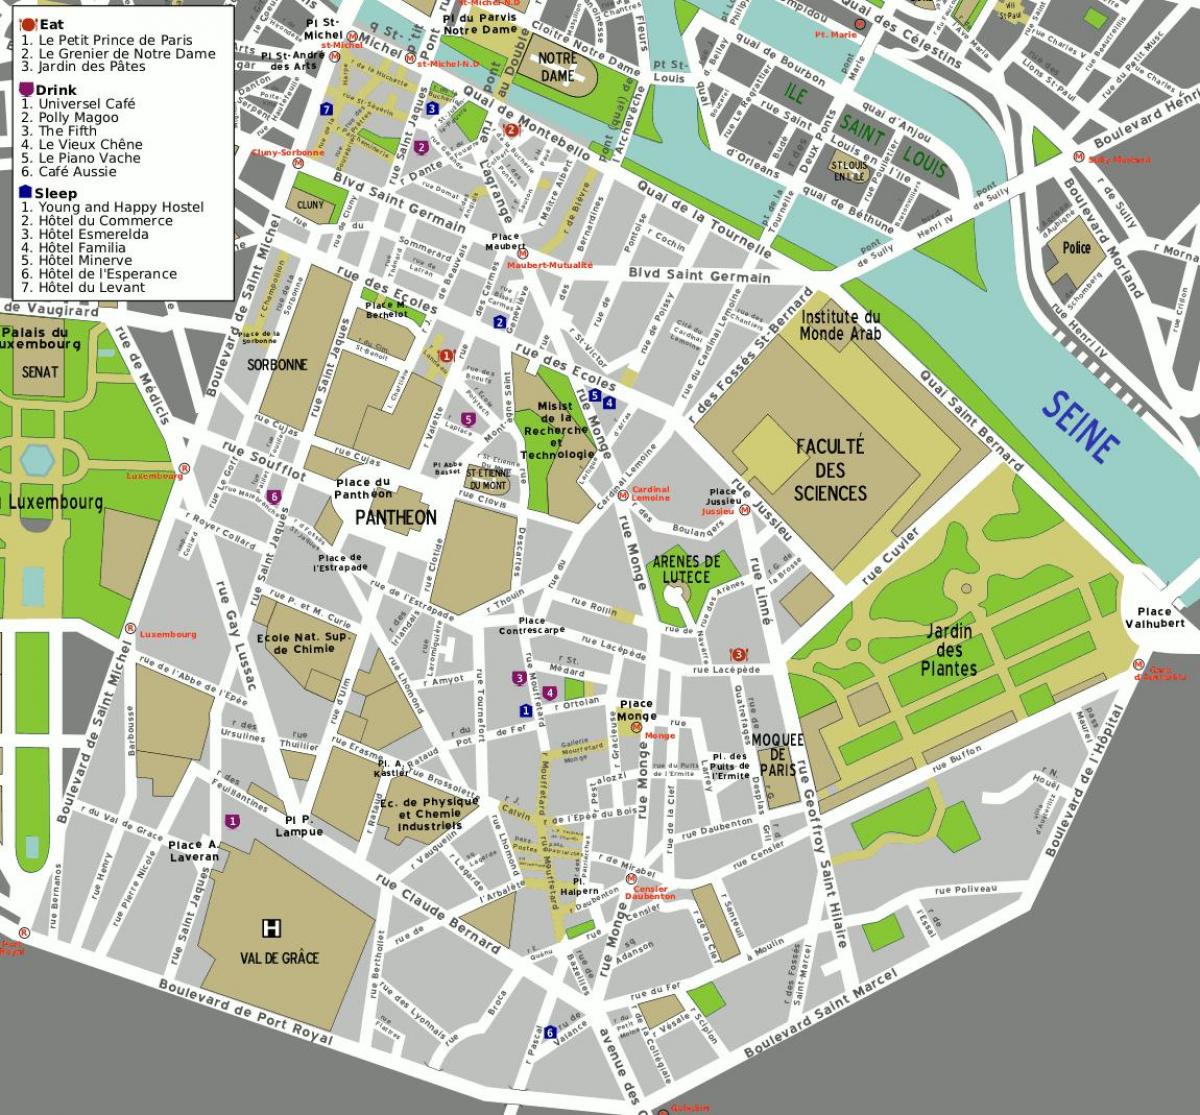 Map of 5th arrondissement of Paris